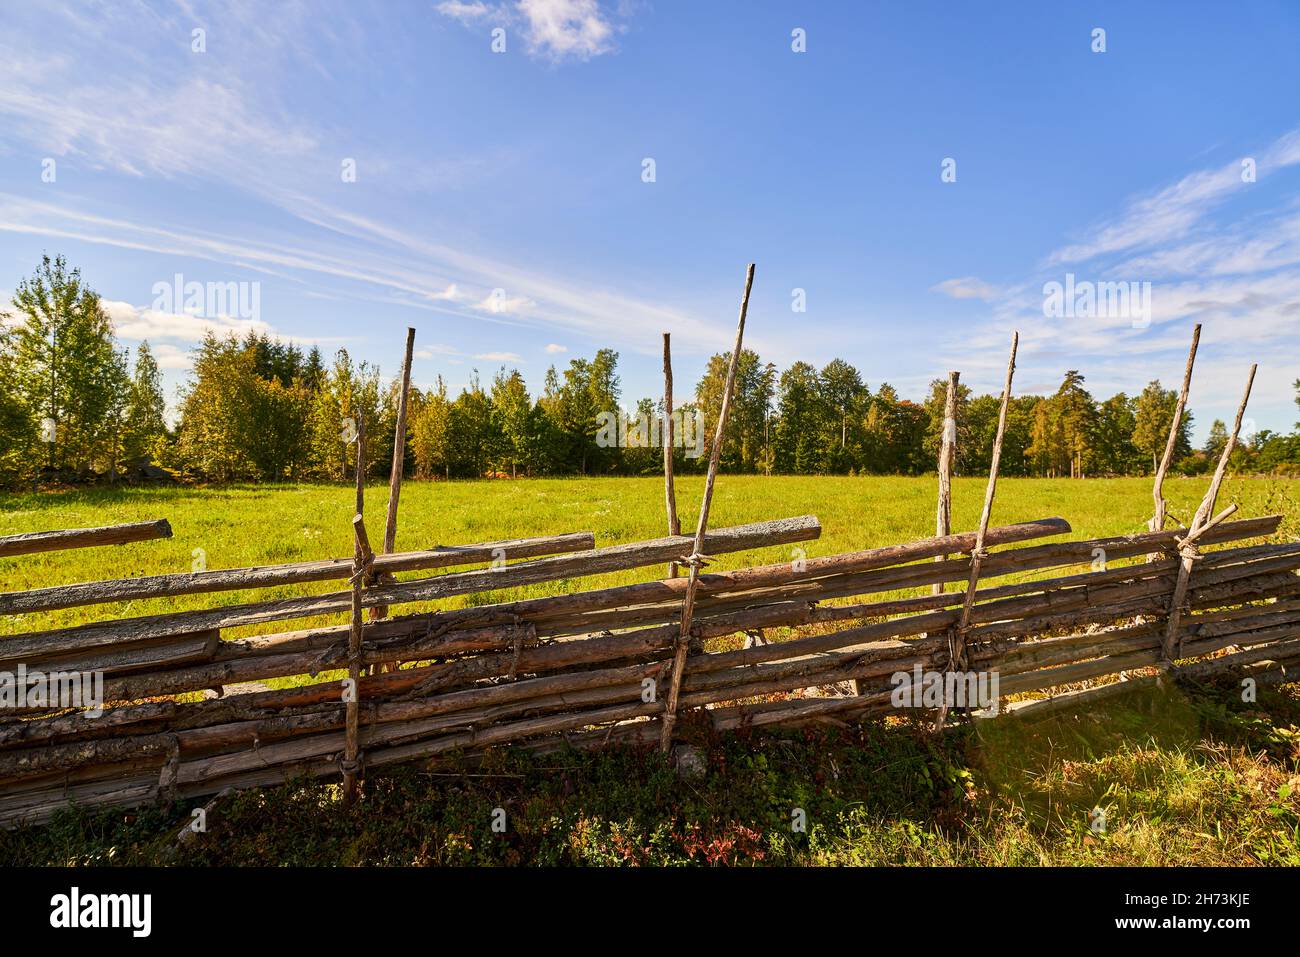 Ancienne clôture en bois suédoise traditionnelle.Haie de style vintage.Campagne authentique palisade de clôture en bois faite à la main dans une zone rurale. Banque D'Images